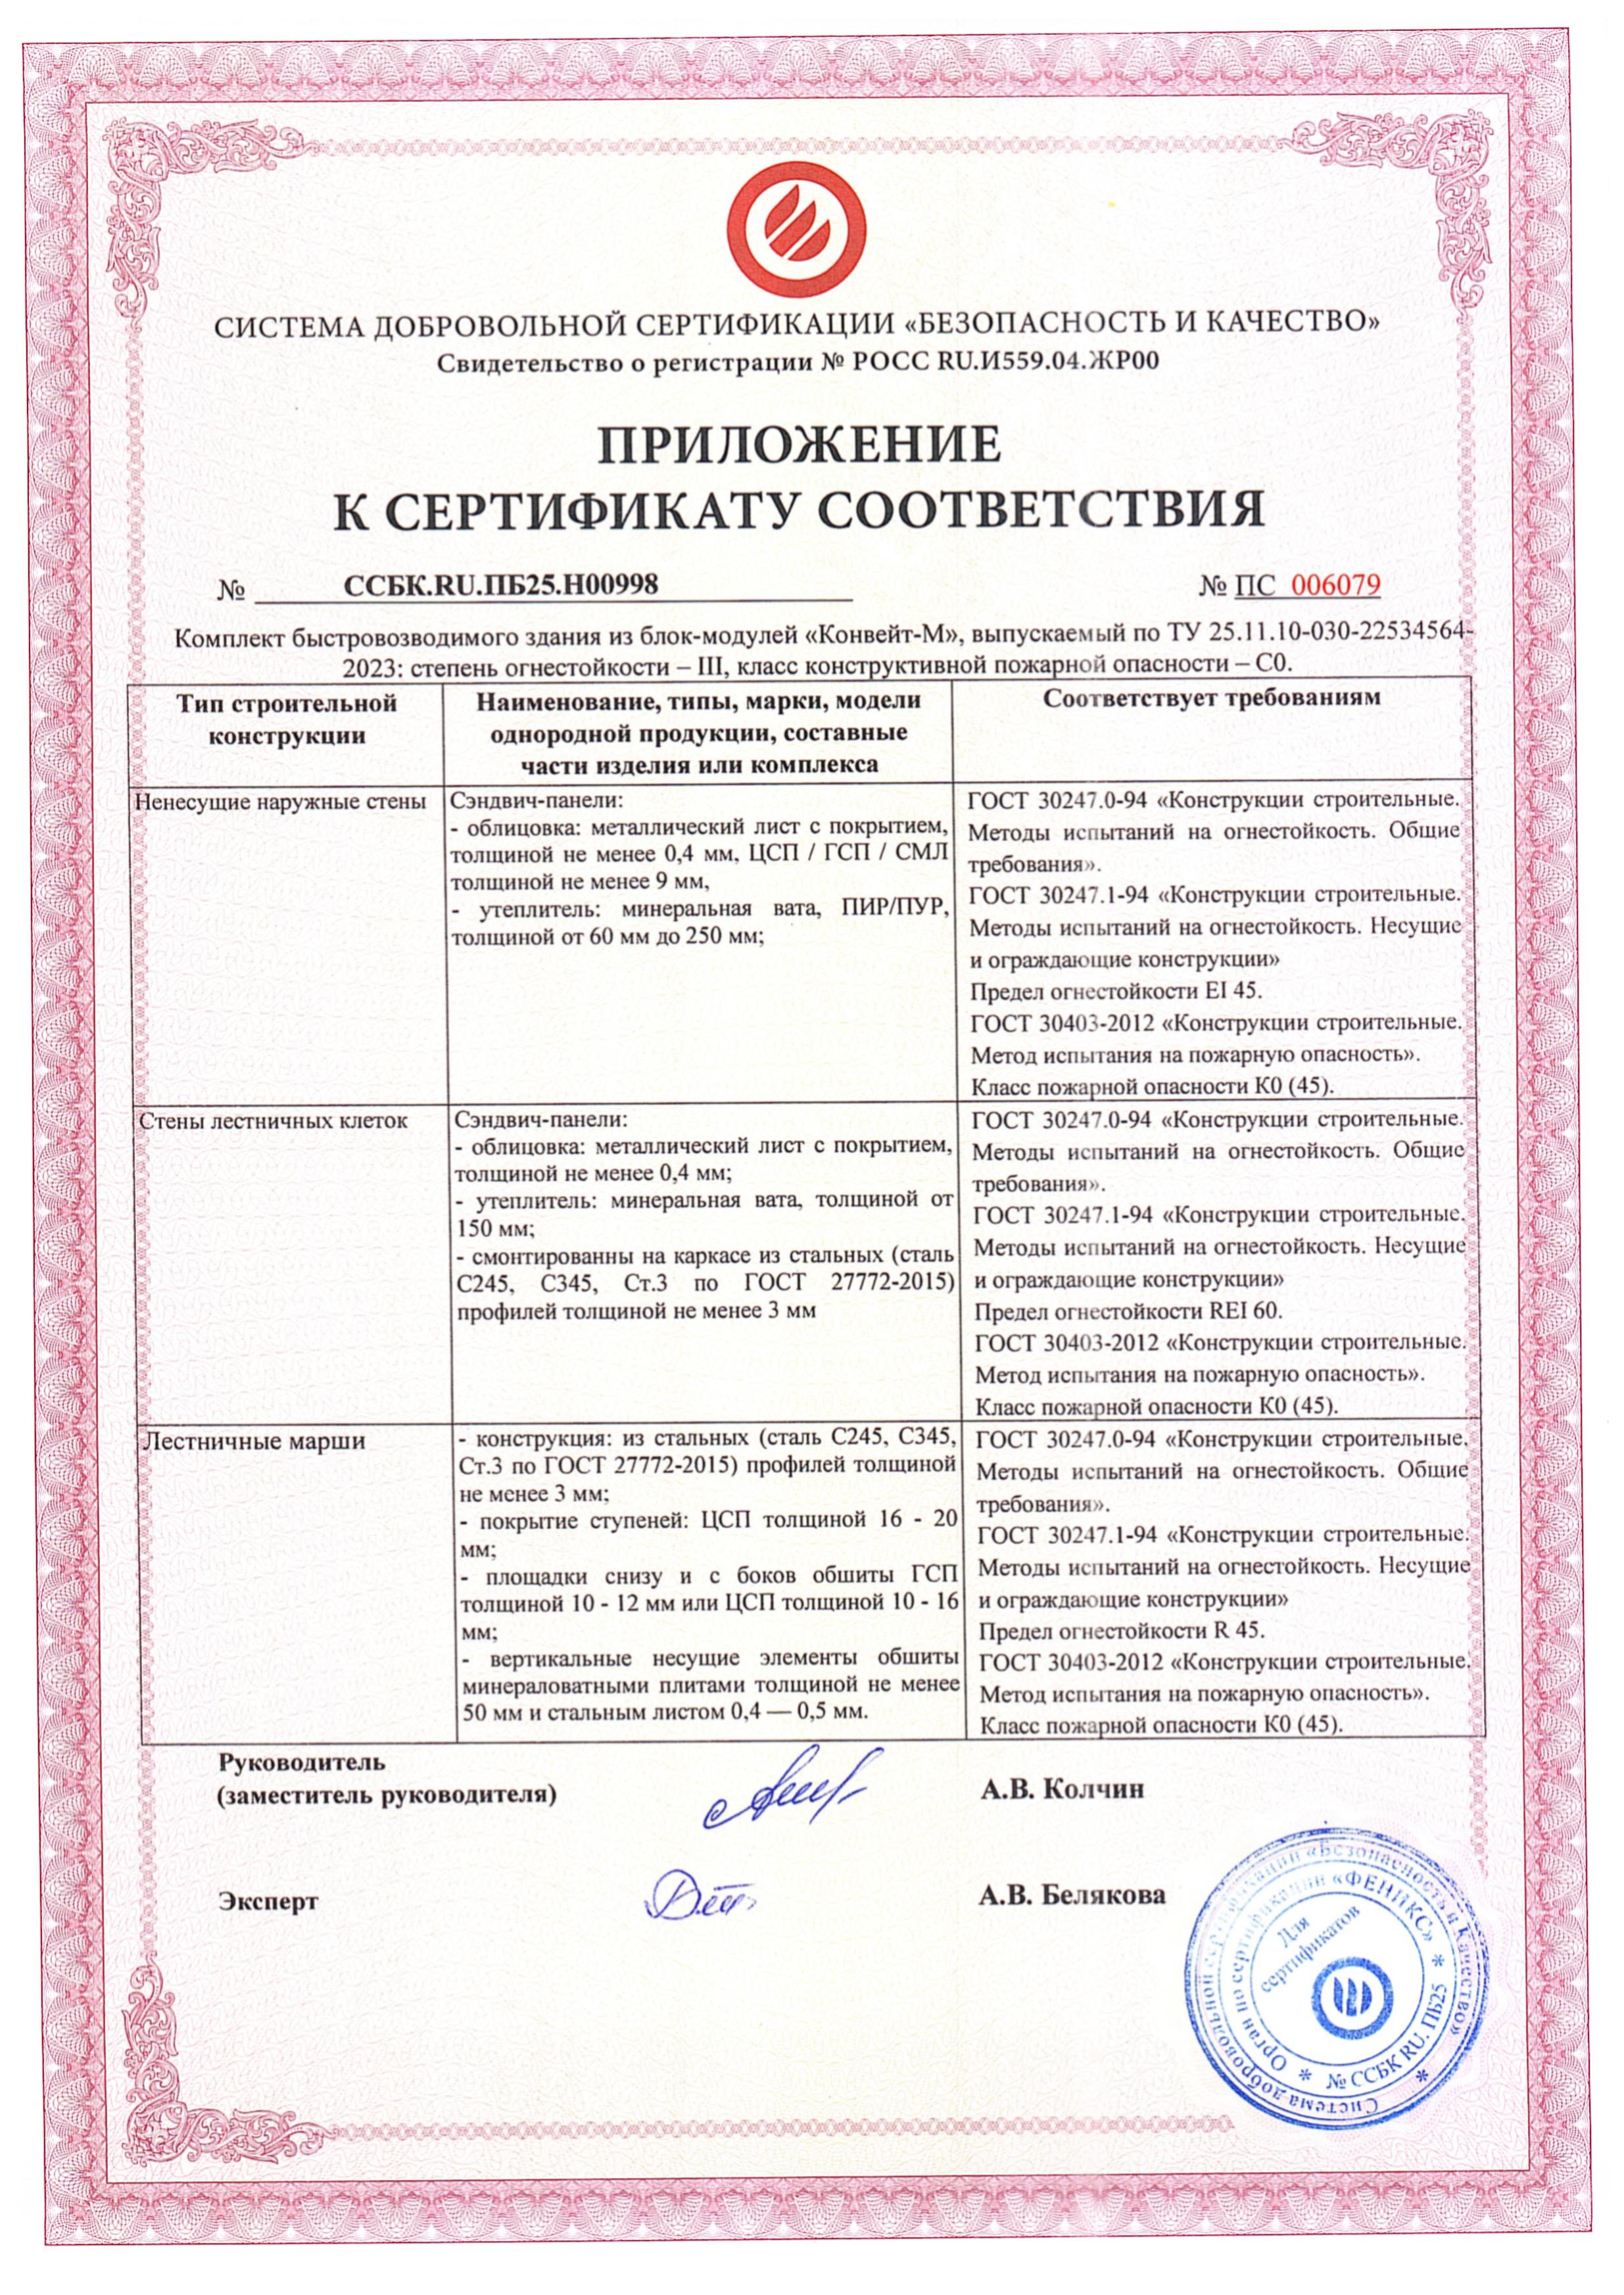 Приложение к сертификату соответствия требованиям пожарной безопасности стр.2